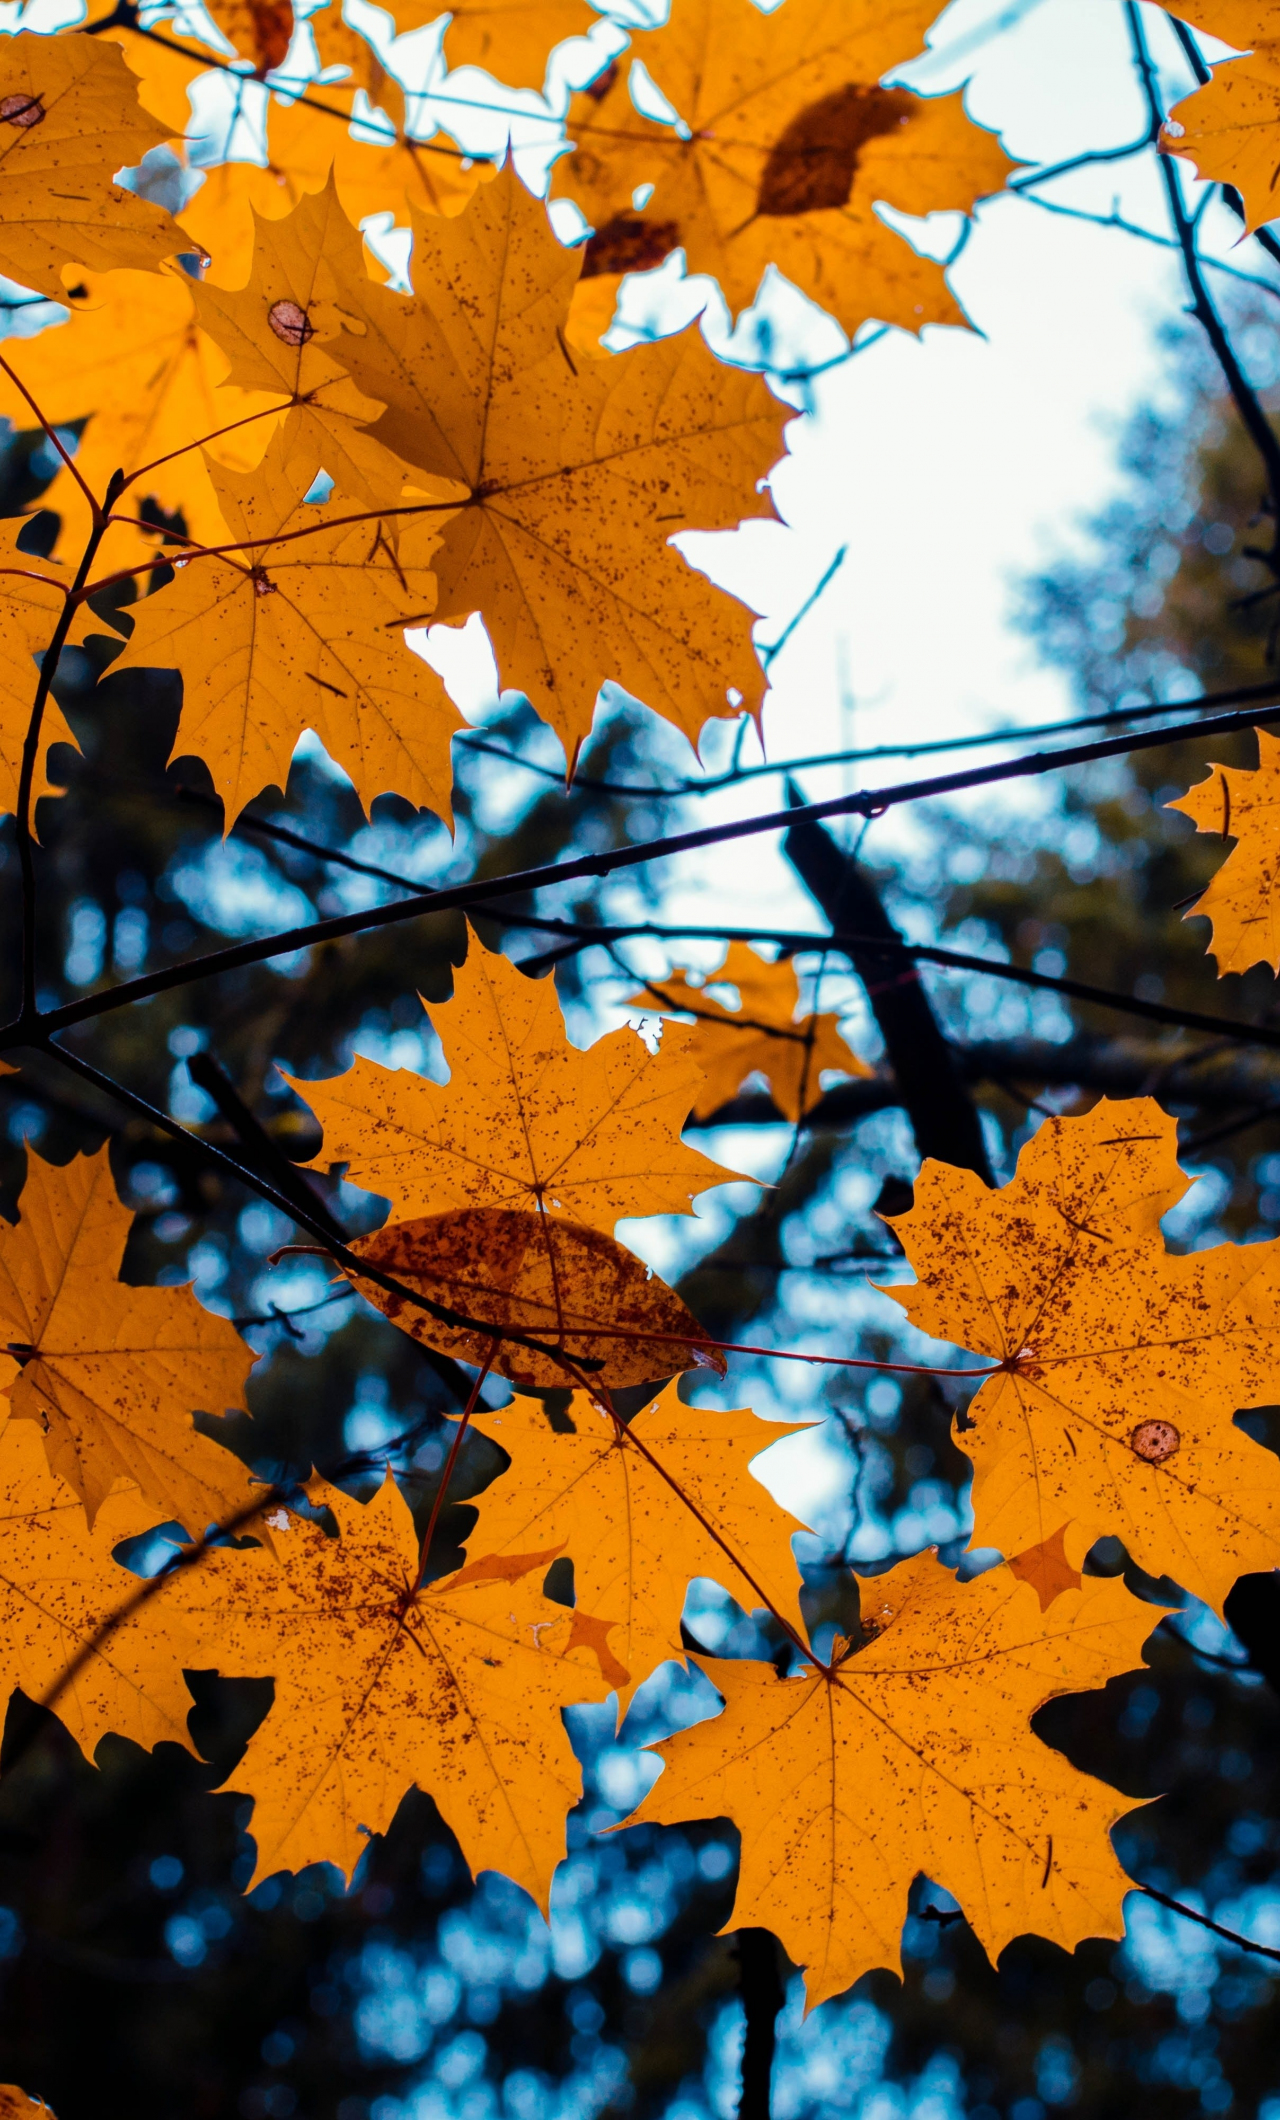 Cây phong mùa thu là một nguồn cảm hứng tuyệt vời cho bức ảnh của bạn. Thể hiện bản sắc thiên nhiên, cây phong mang đến sự thanh lịch và độc đáo cho các bức ảnh. Bạn sẽ không bao giờ làm sai khi chọn một khung cảnh tuyệt vời như thế này cho bộ sưu tập của mình.